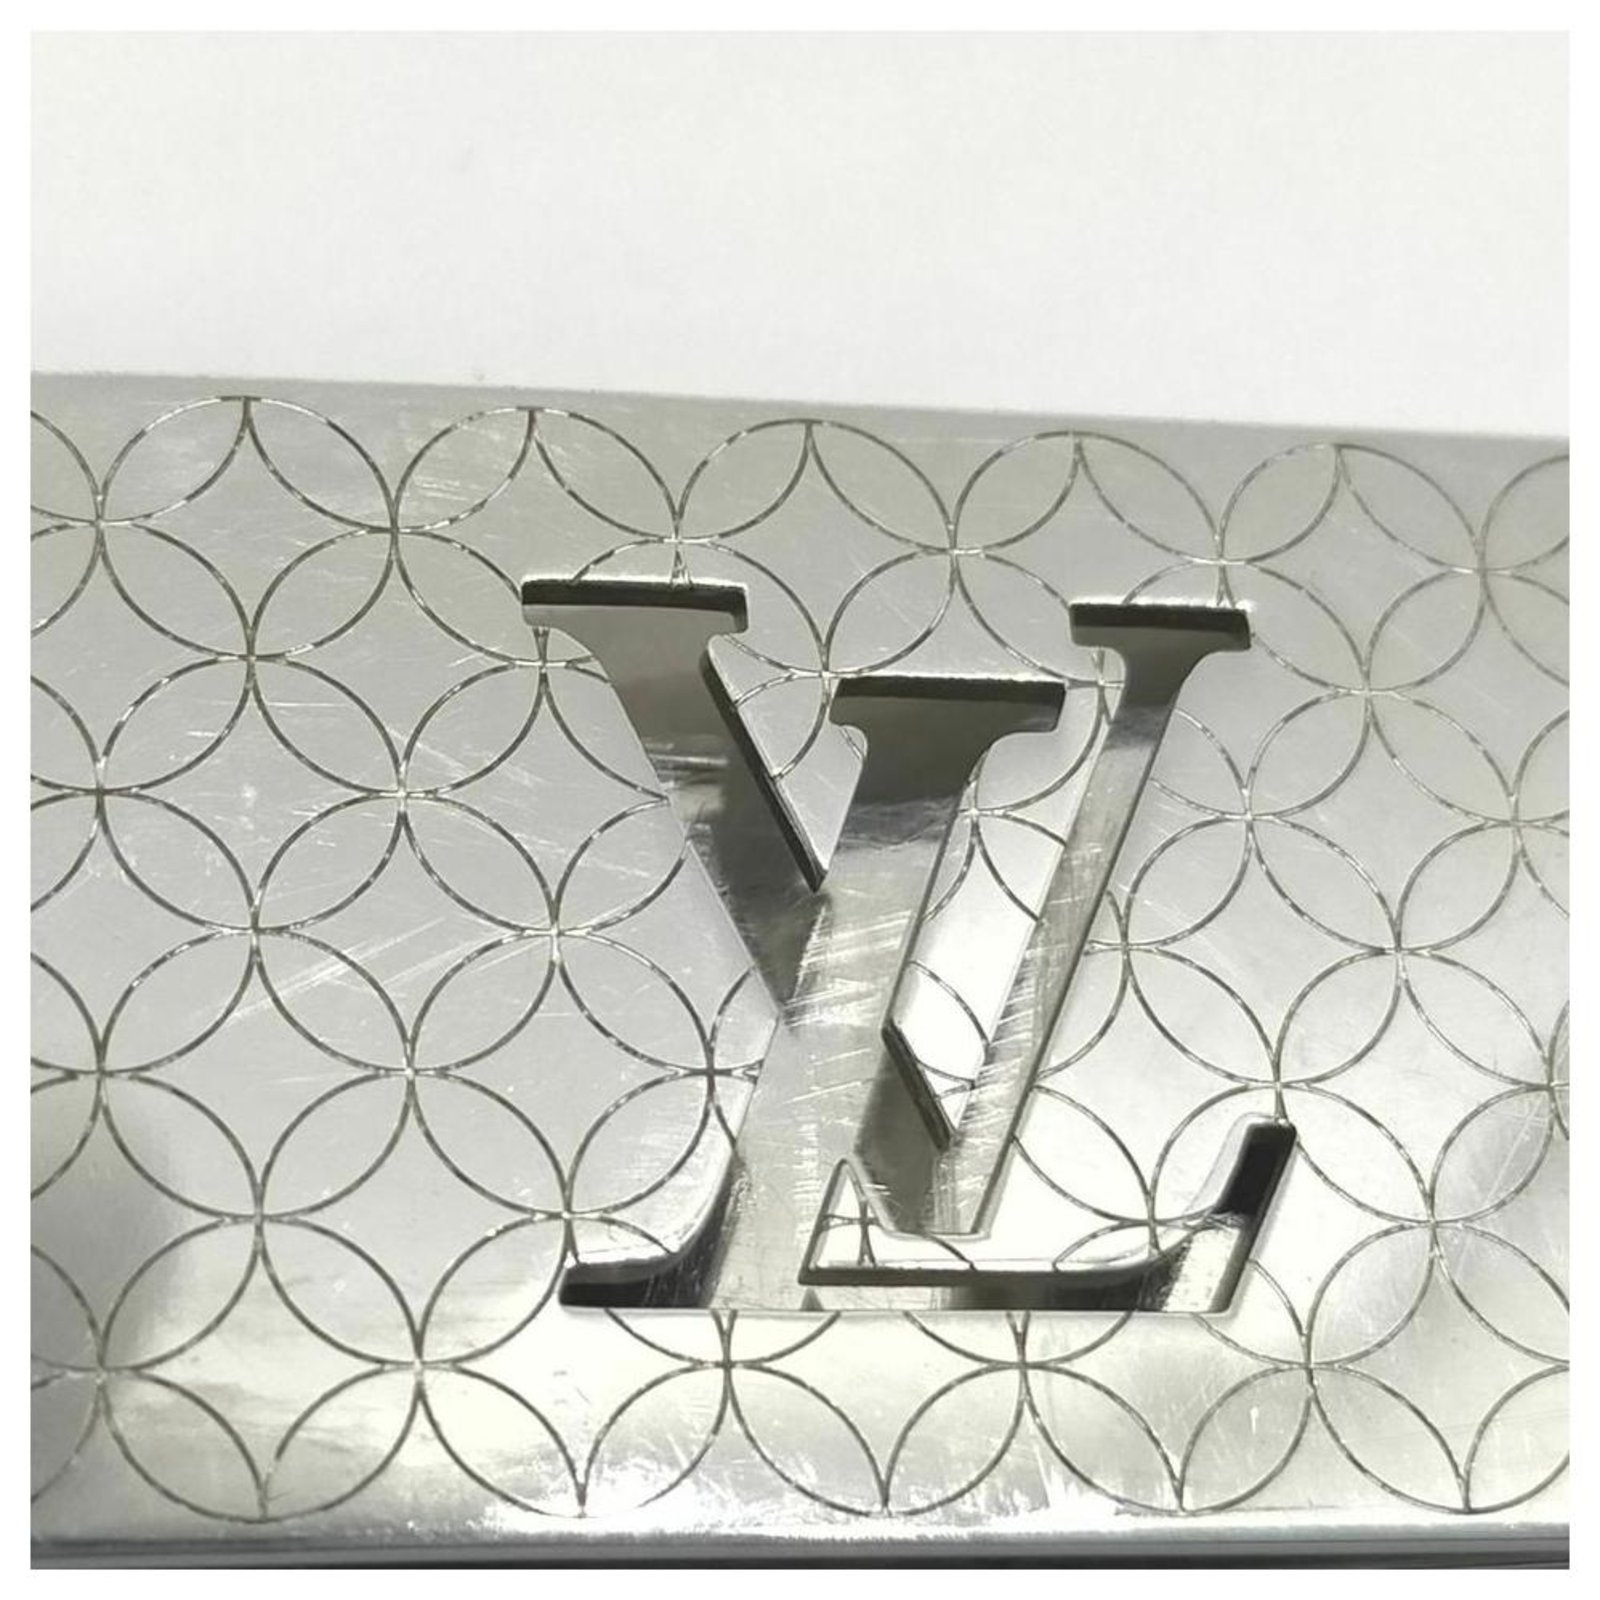 Louis Vuitton Geldklemmer aus Edelstahl Silber